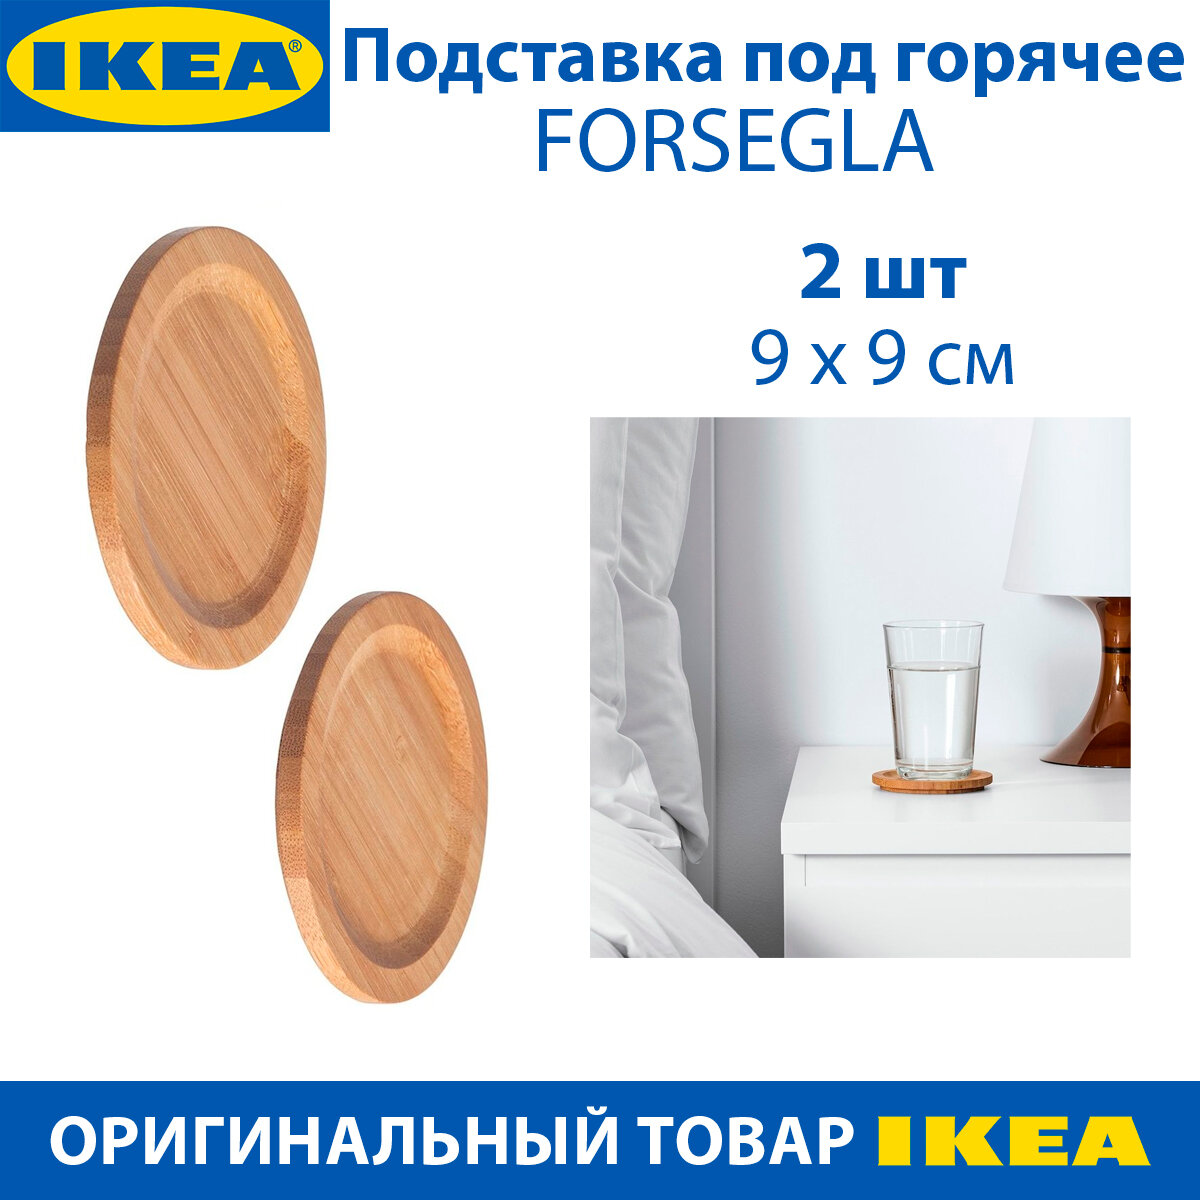 Подставка под горячее IKEA - FORSEGLA (форсегла) бамбук 9 см 2 шт в упаковке